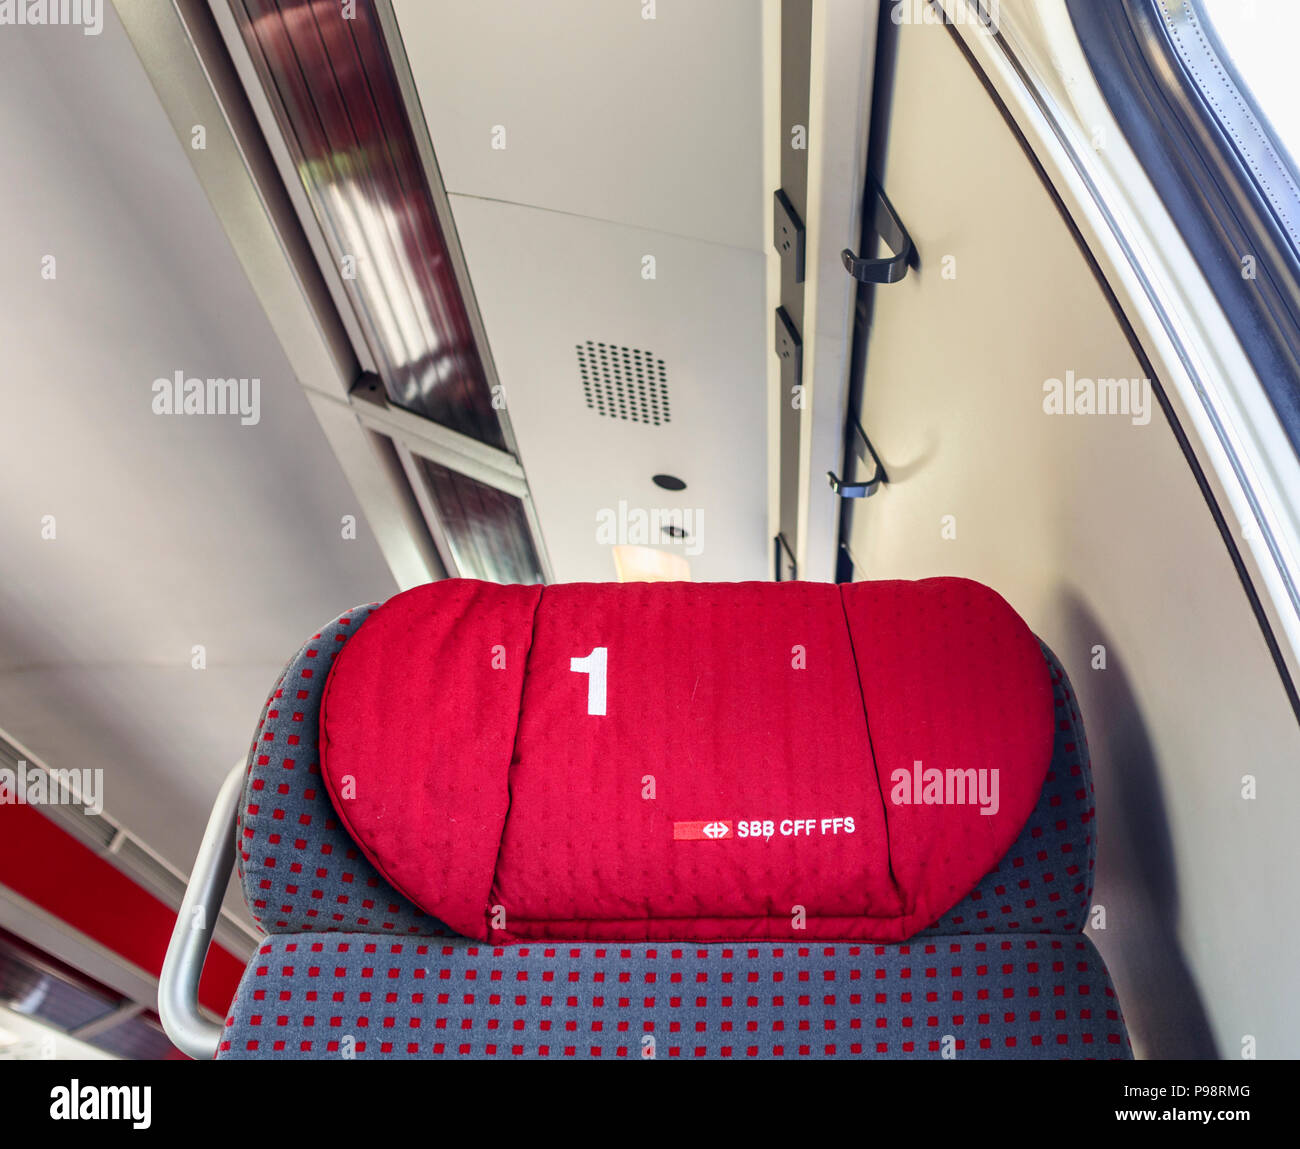 Ferrovie federali svizzere (SBB CFF FFS) testa cuscino di appoggio su di una sede in un treno in prima classe vano di un carrello ferroviario Foto Stock